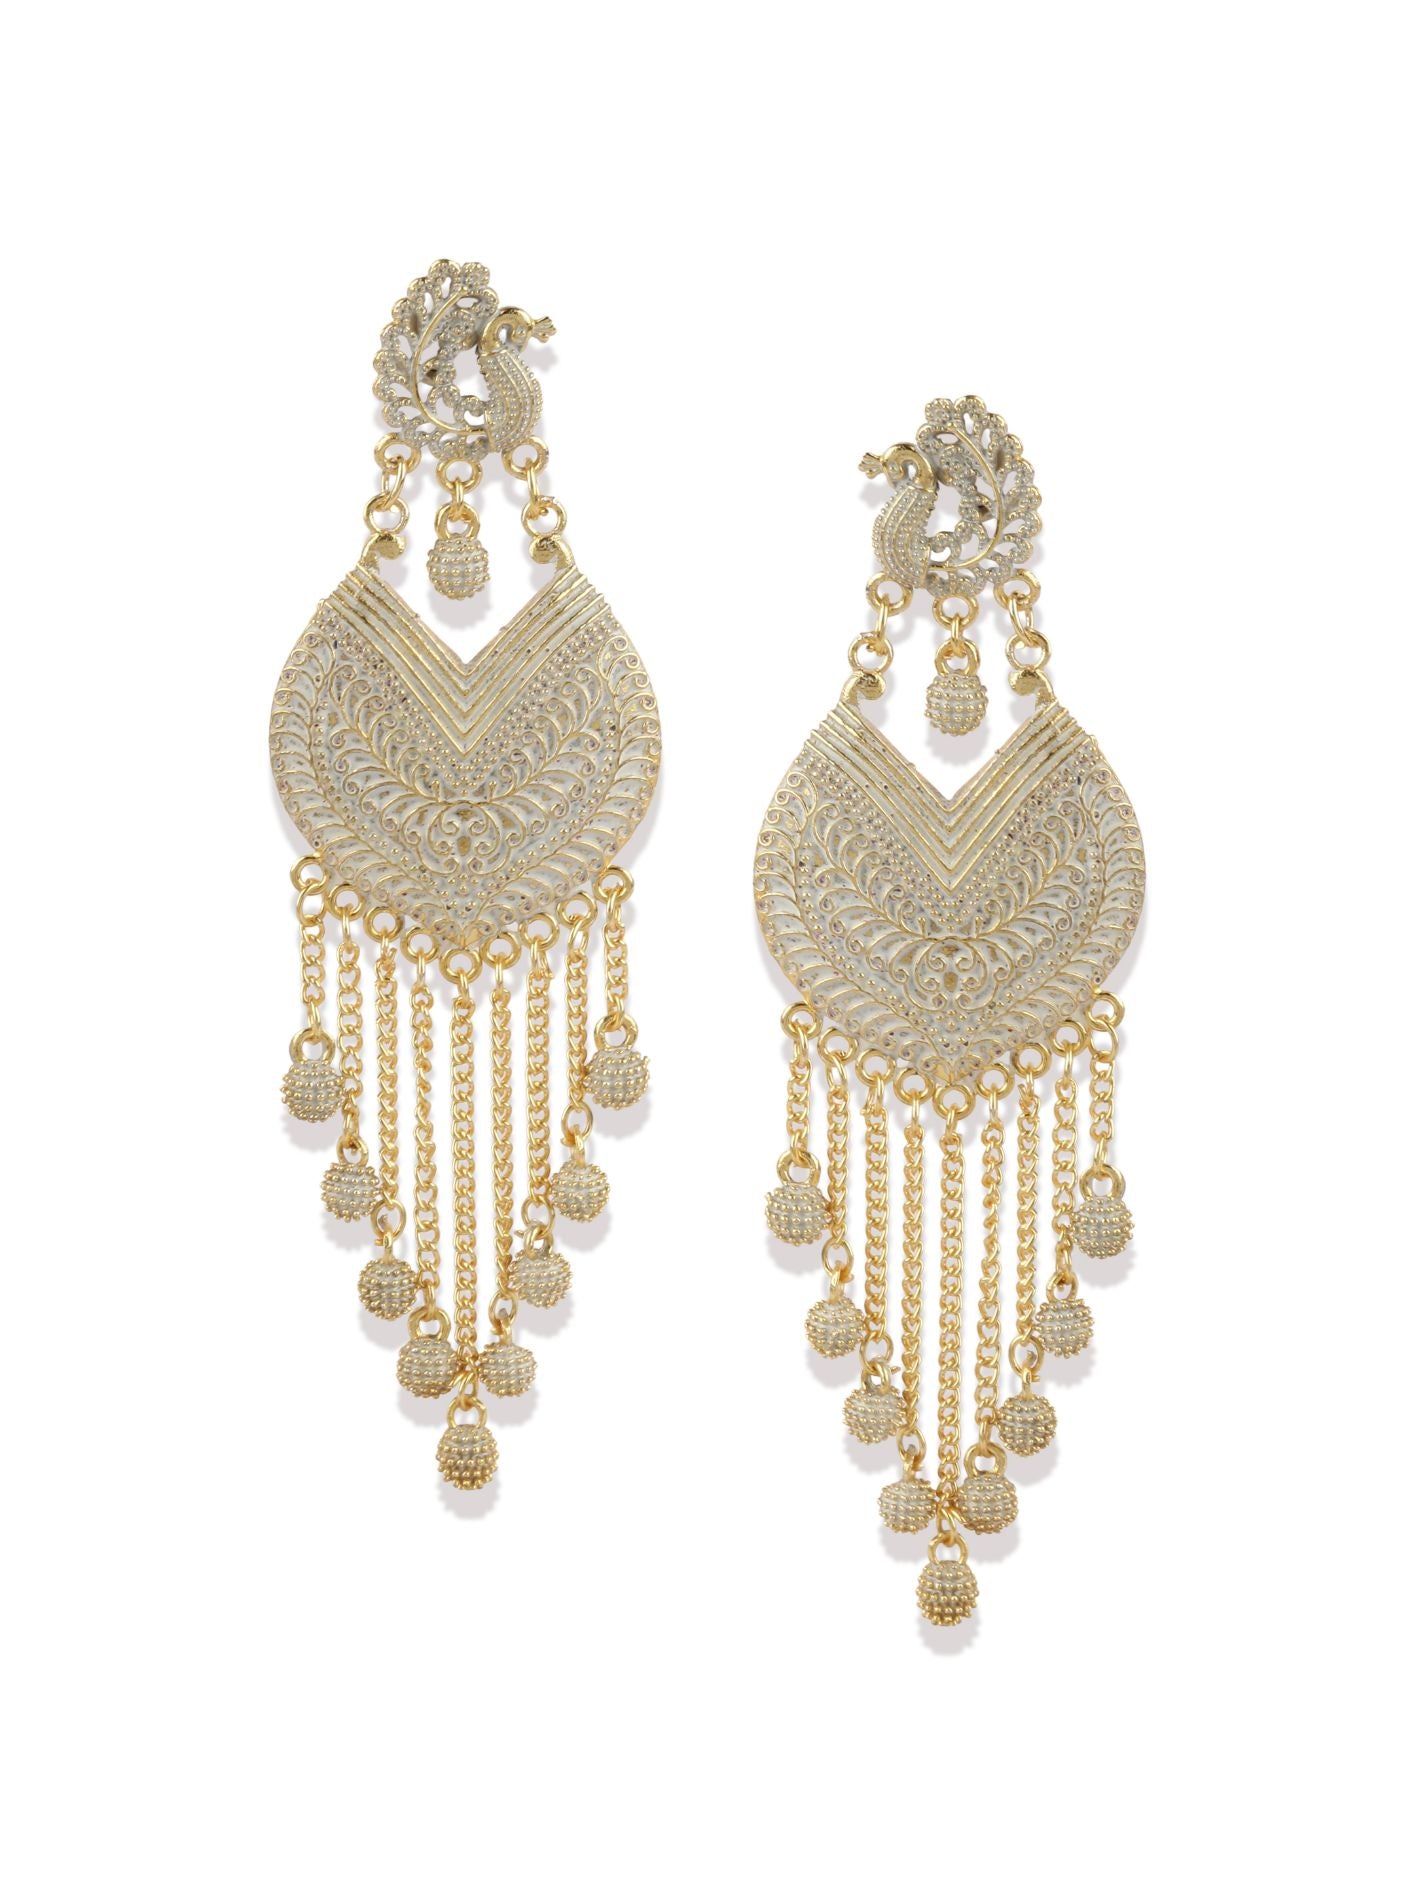 18K Gold Silver Large Art Nouveau Chandelier Earrings  Boylerpf